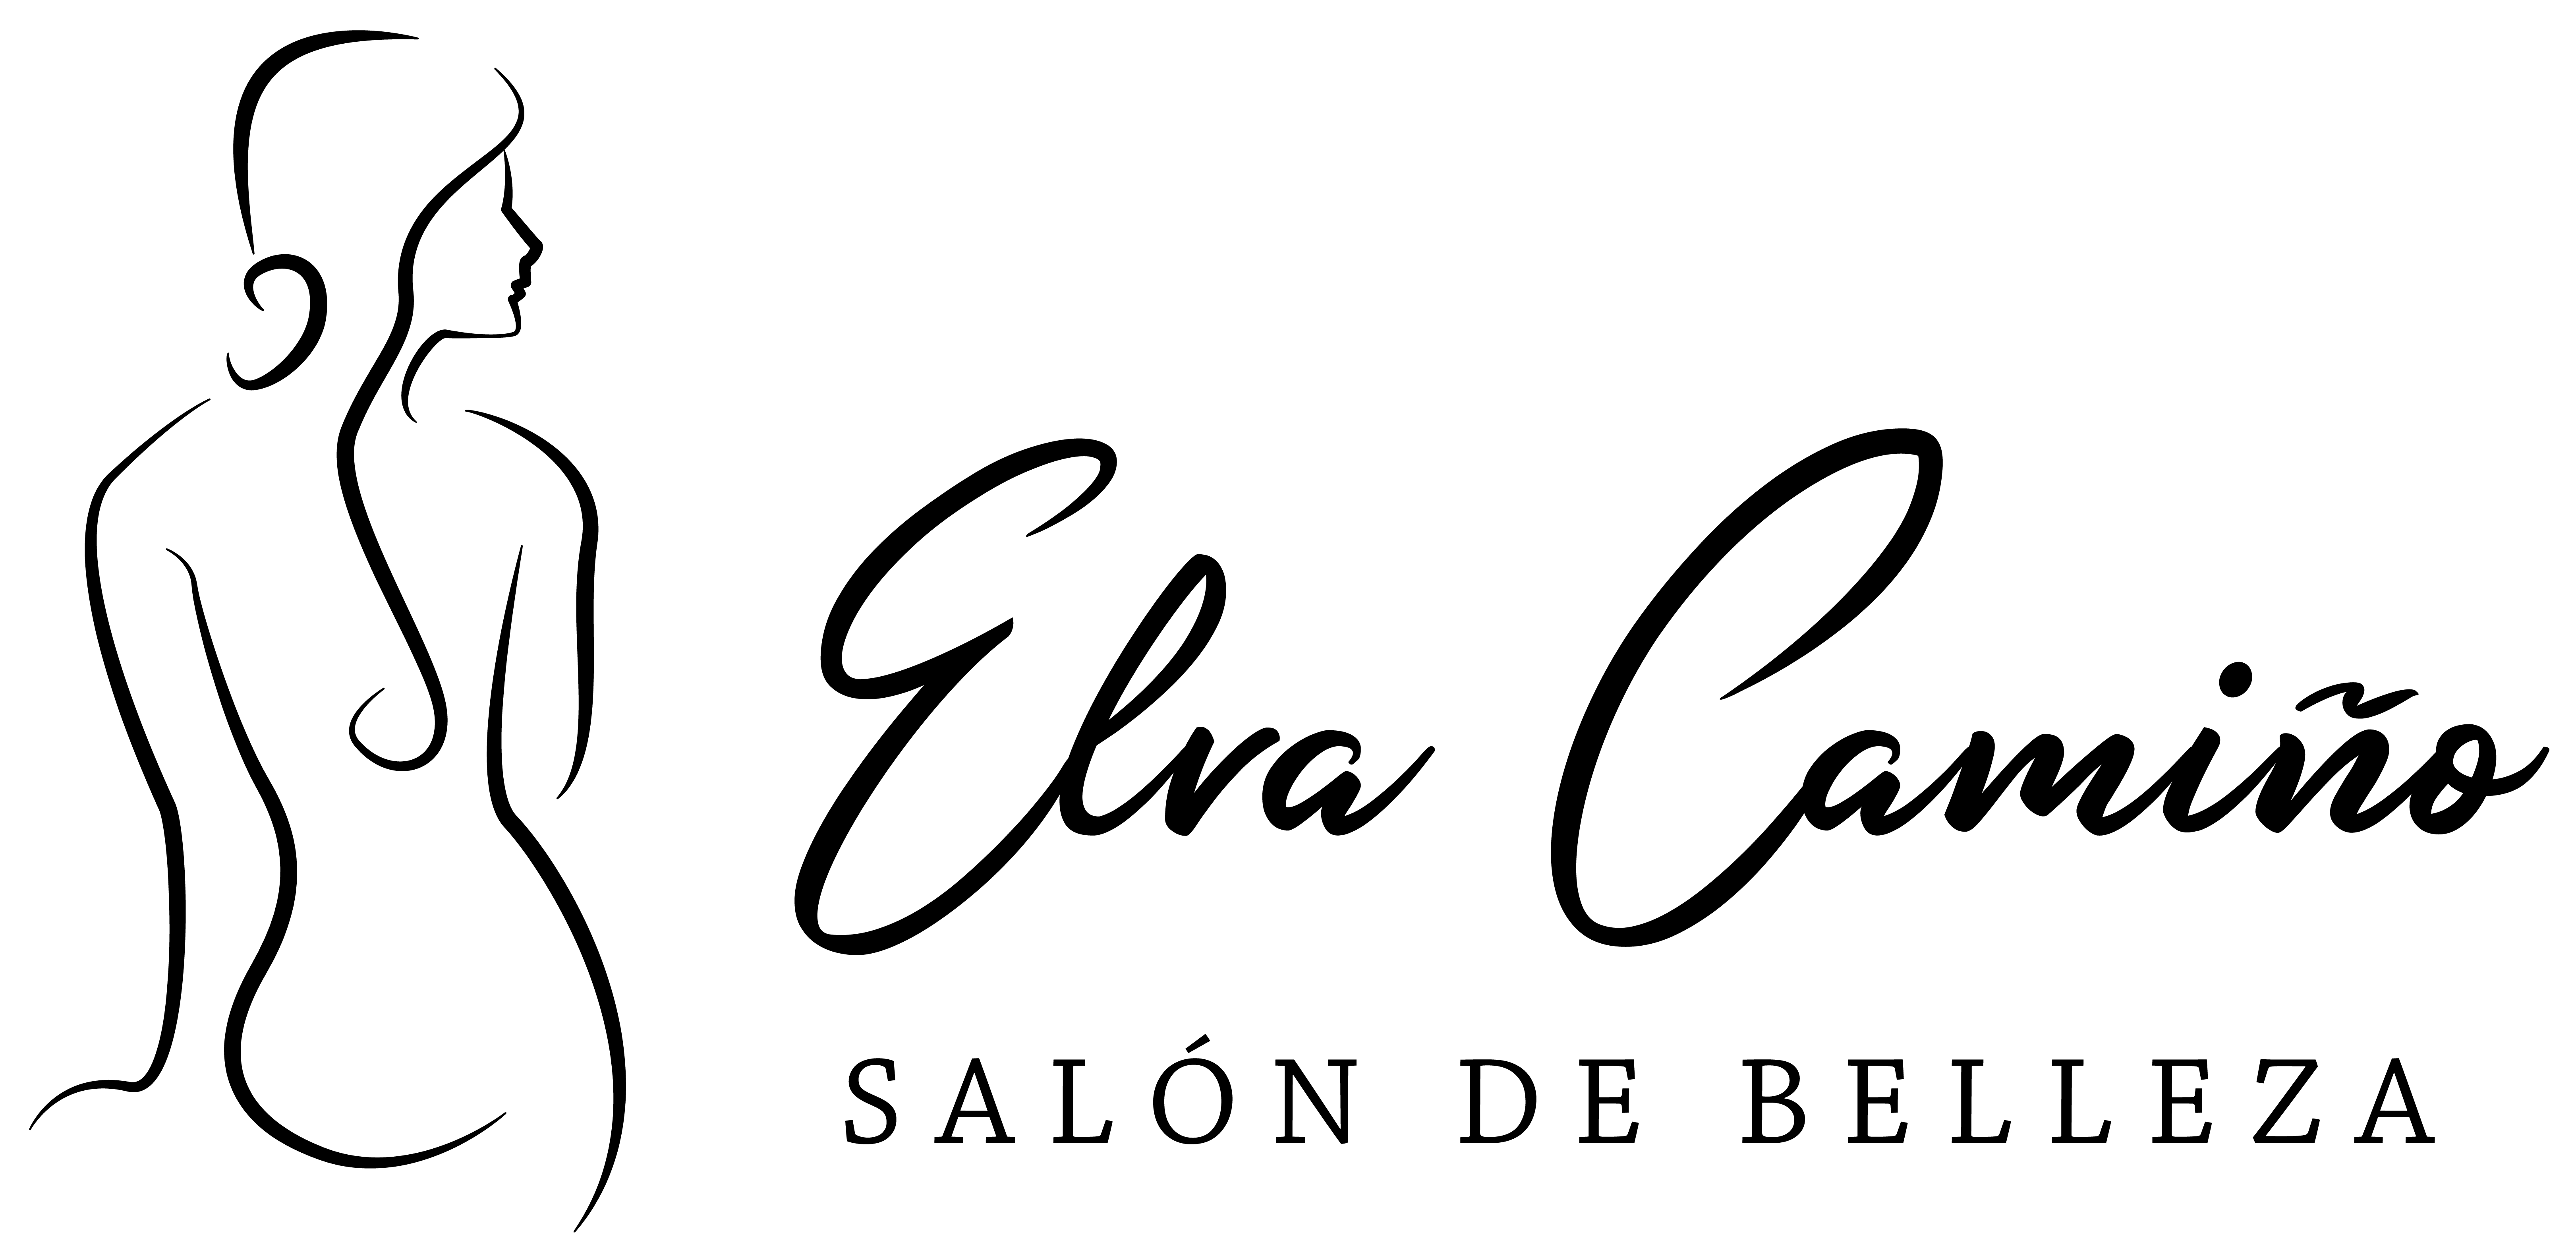 Salón de Belleza Elva Camiño